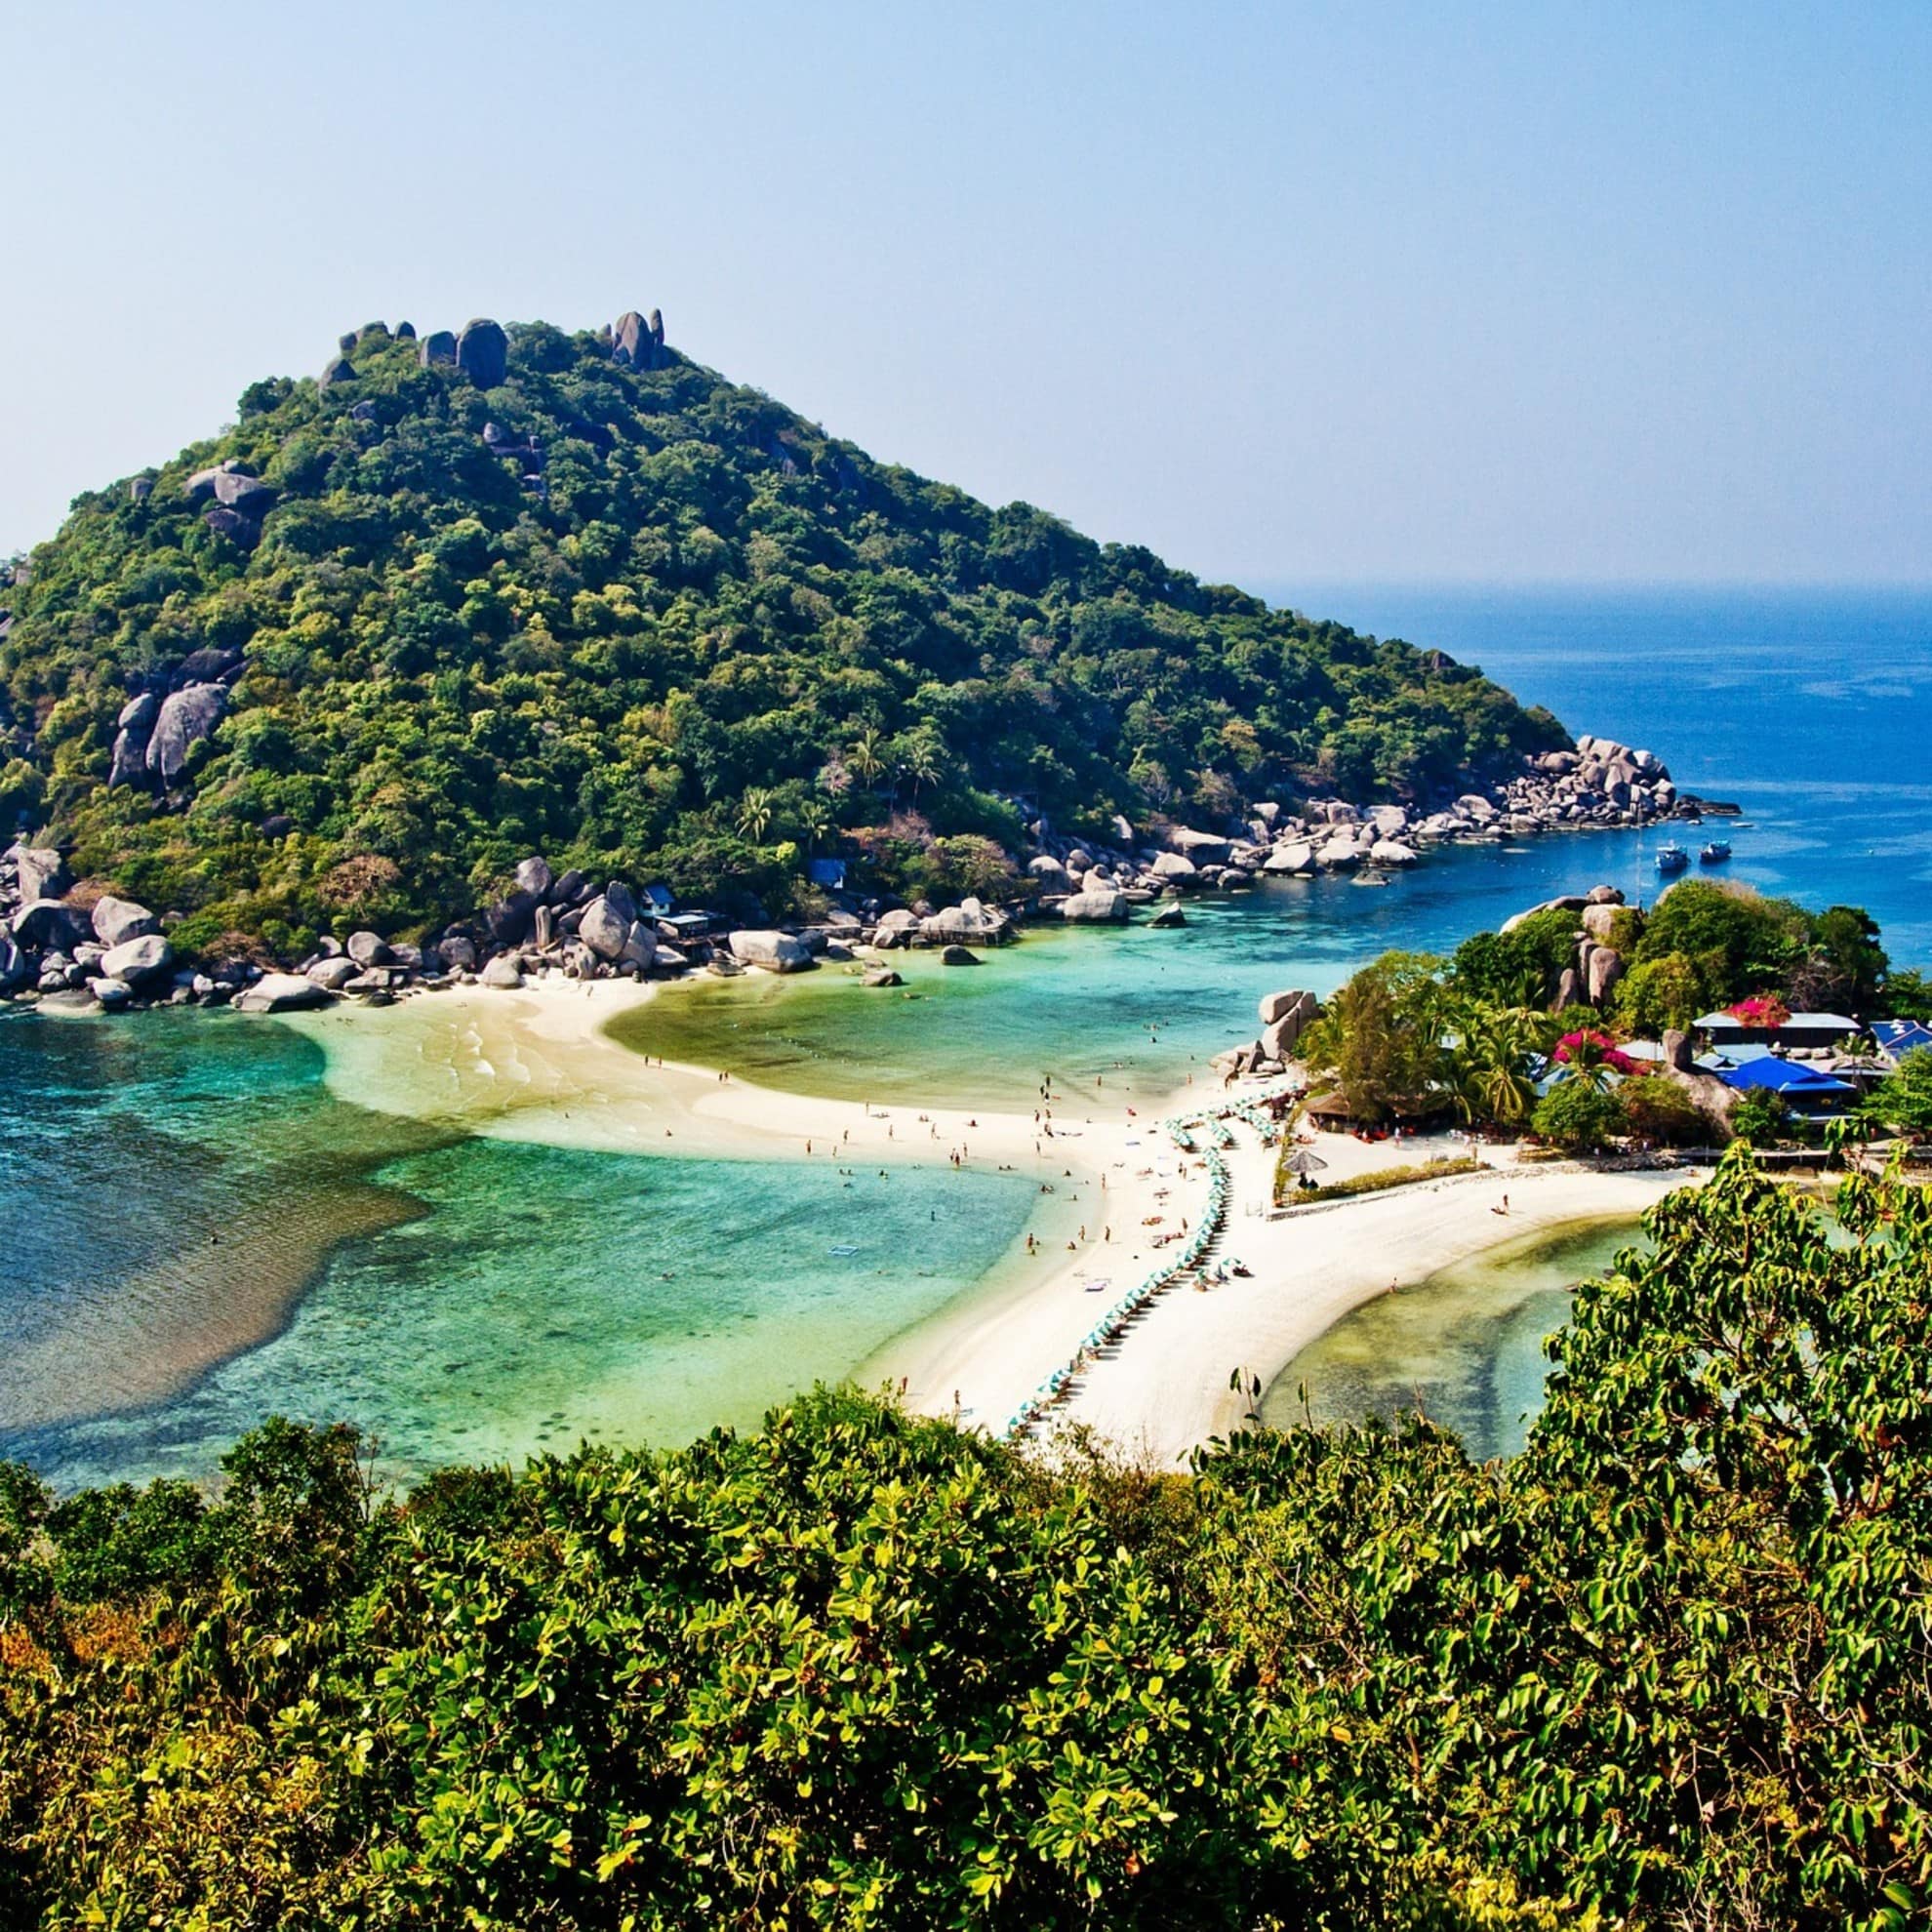 Blick auf den Strand von Koh Tao mit Strand-Bungalows und einer vorgelagerten Insel